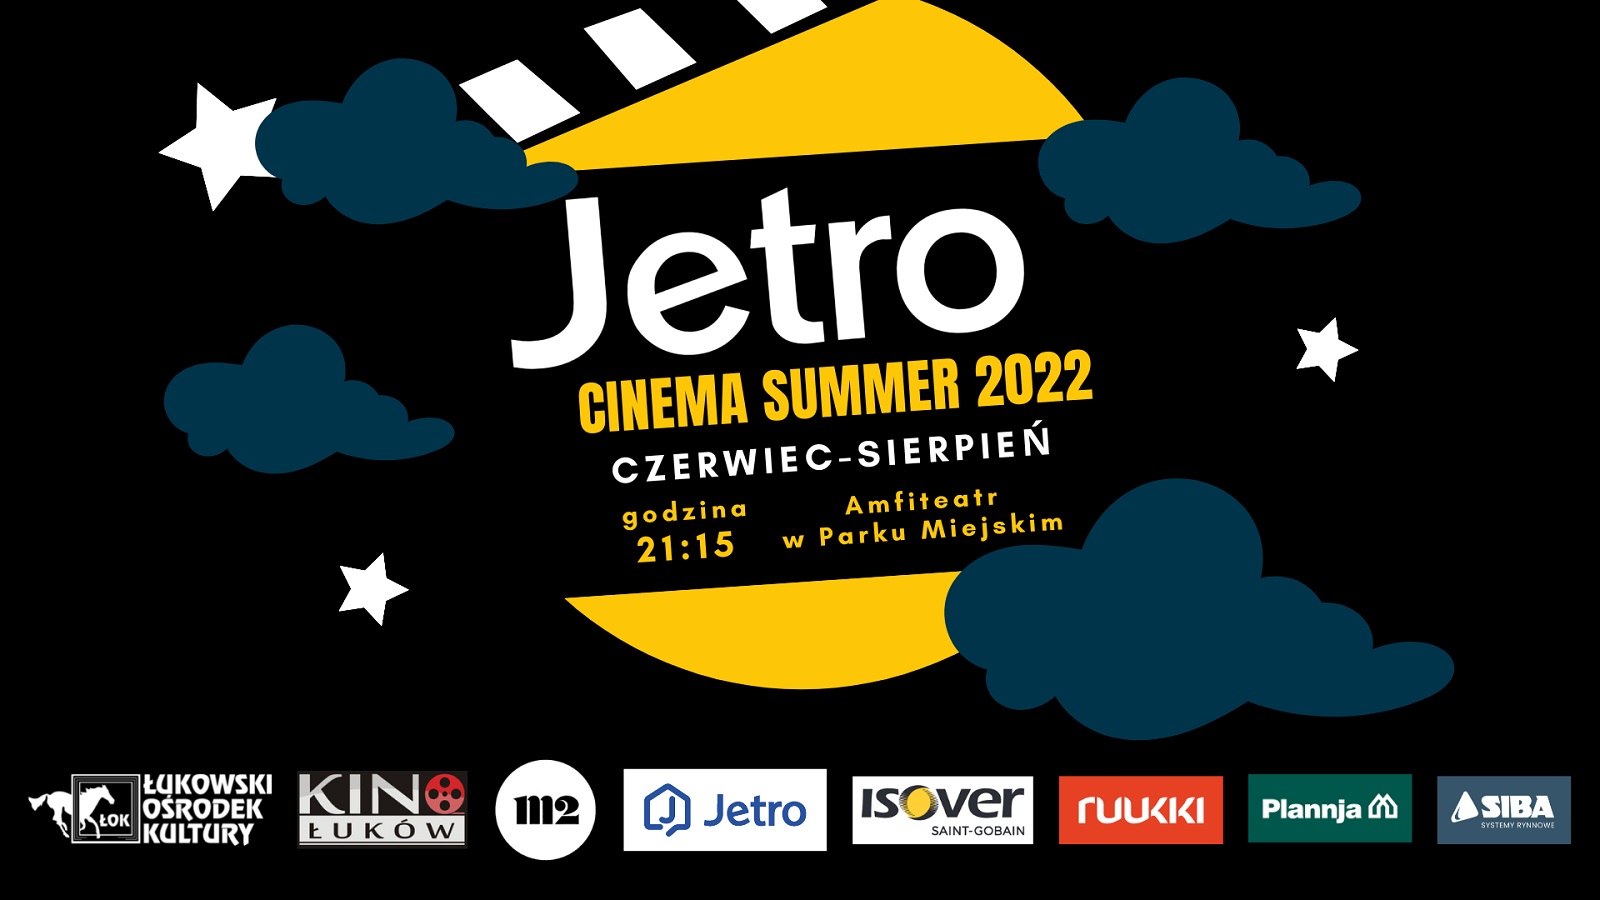 Jetro Cinema Summer ponownie w Łukowie